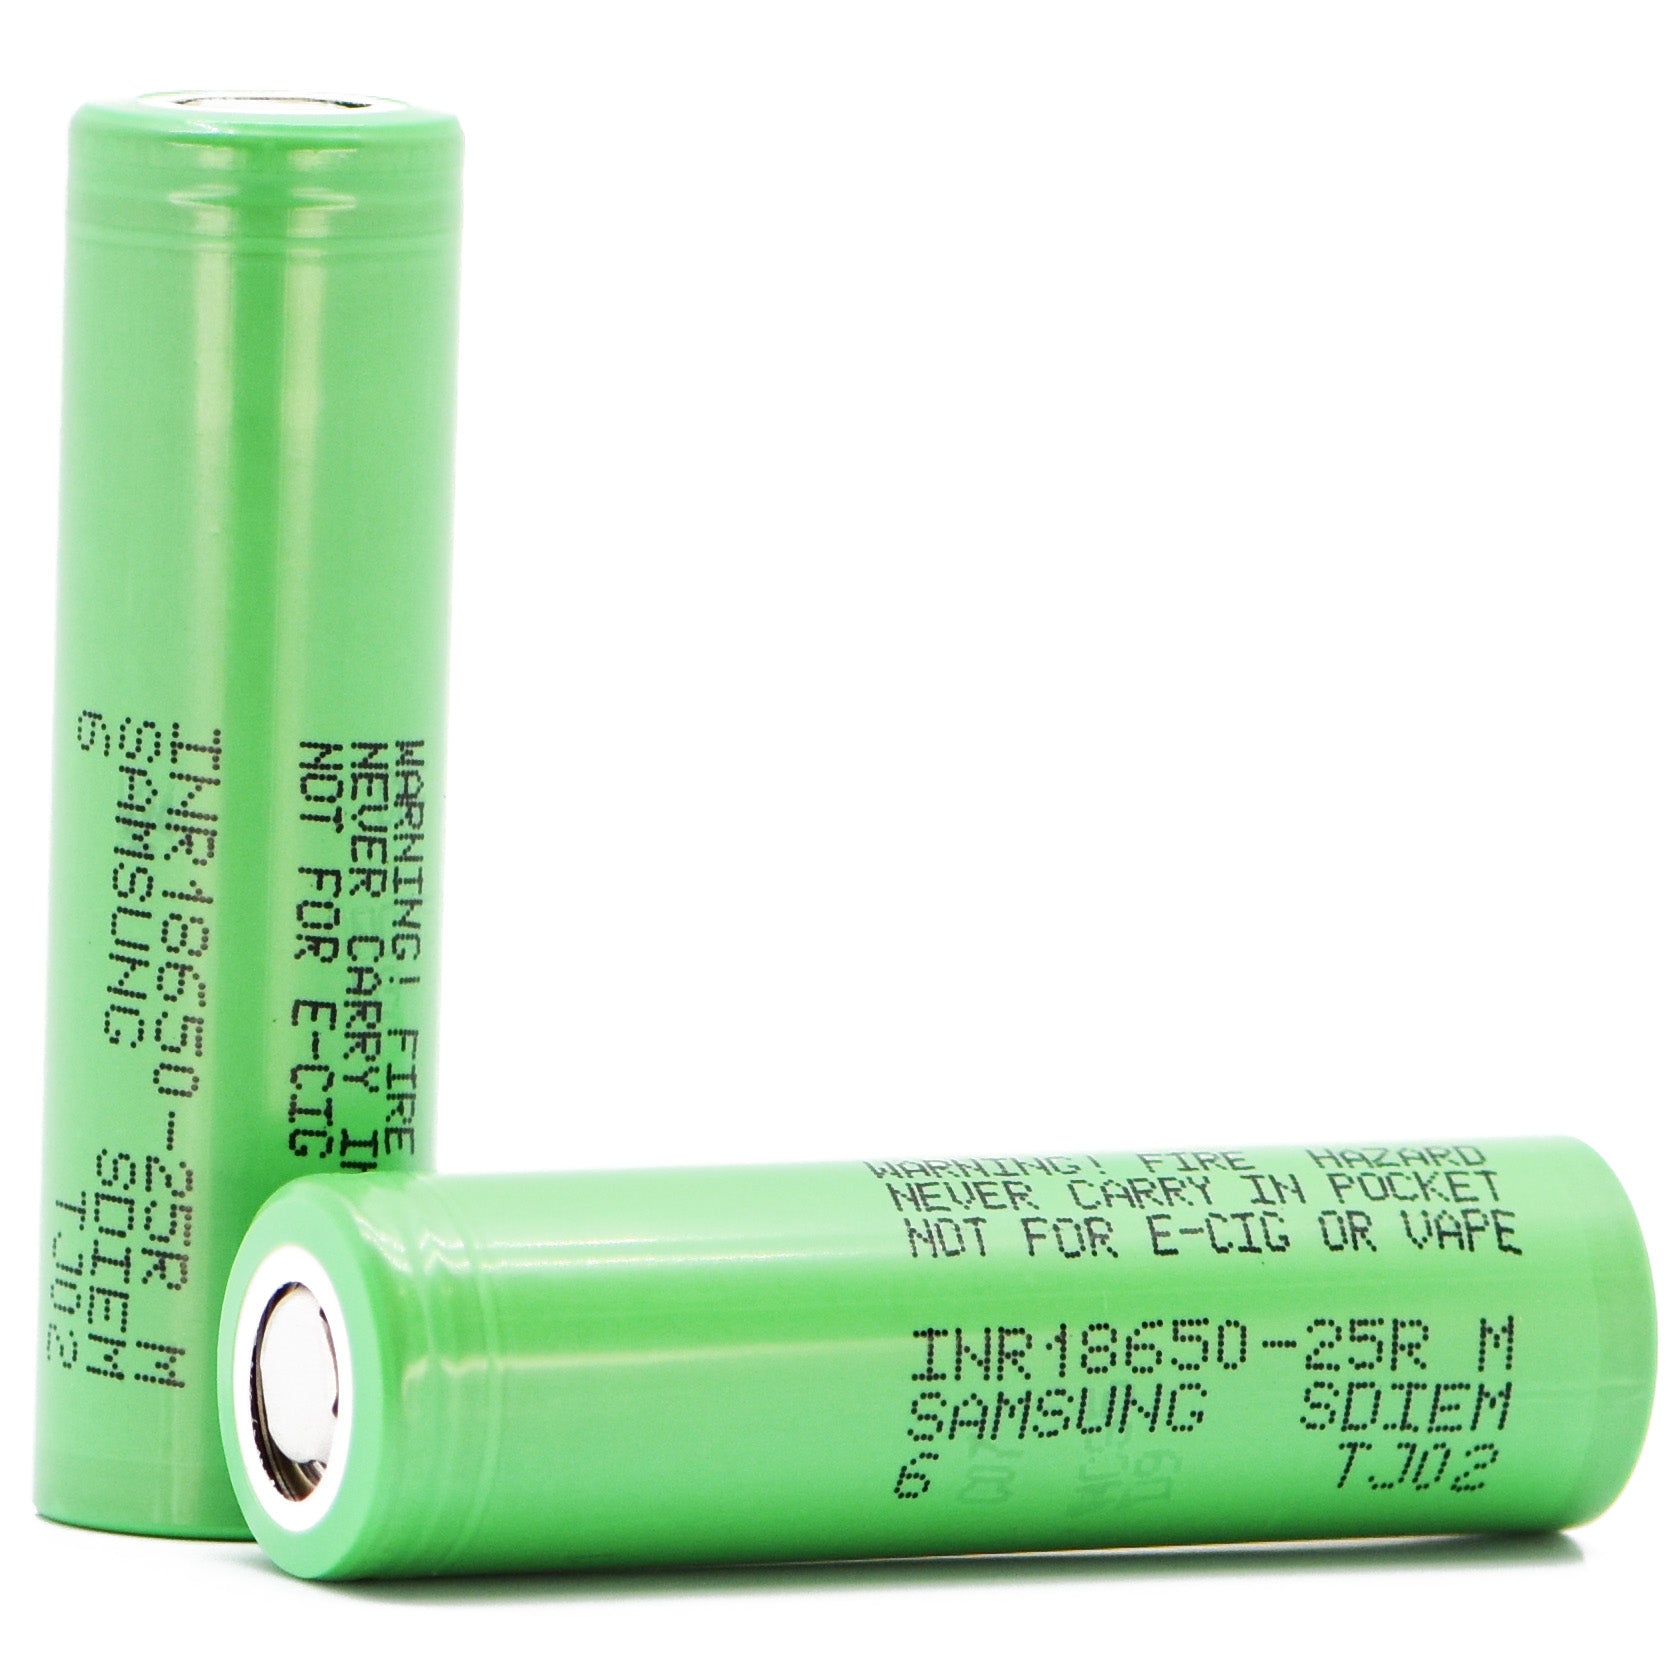 Samsung 25R 18650 2500mAh High drain FLAT TOP Lithium ion battery